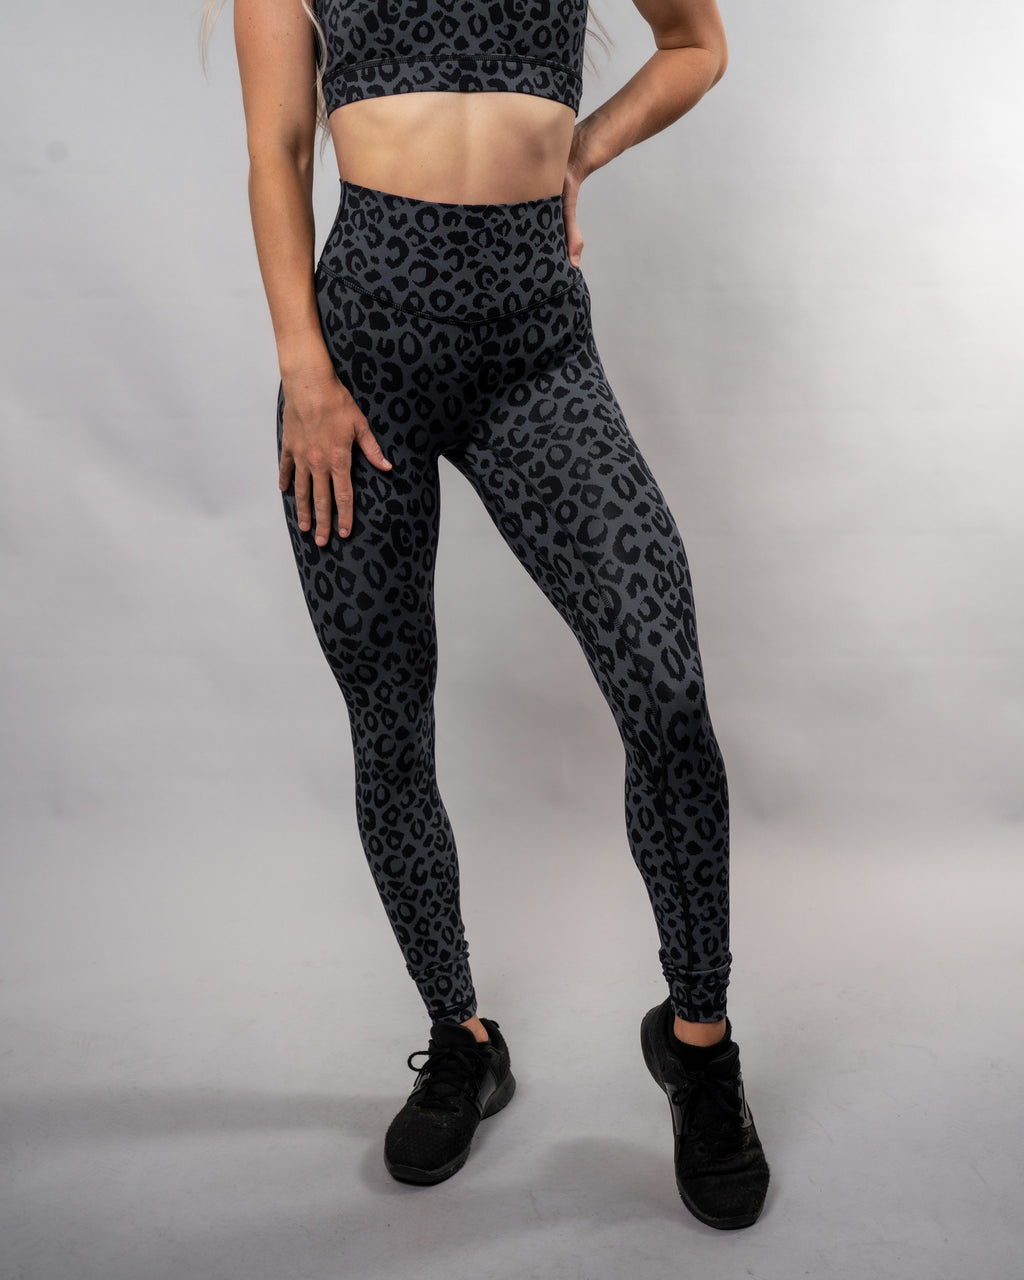 Leopard gradient scrunch legging - noireblanc